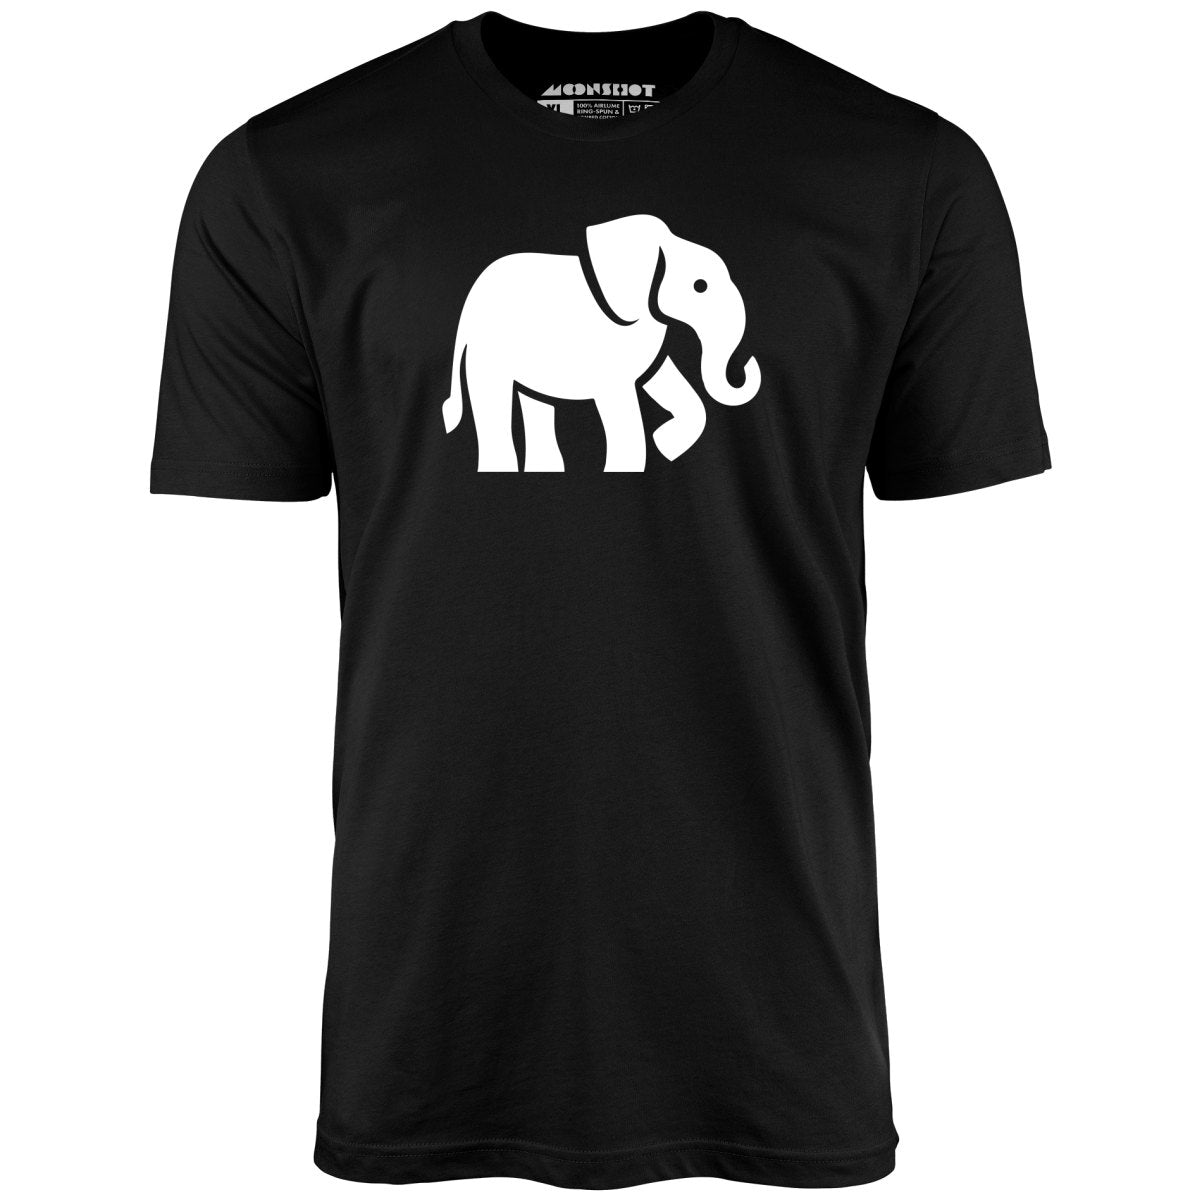 White Elephant Gift - Unisex T-Shirt